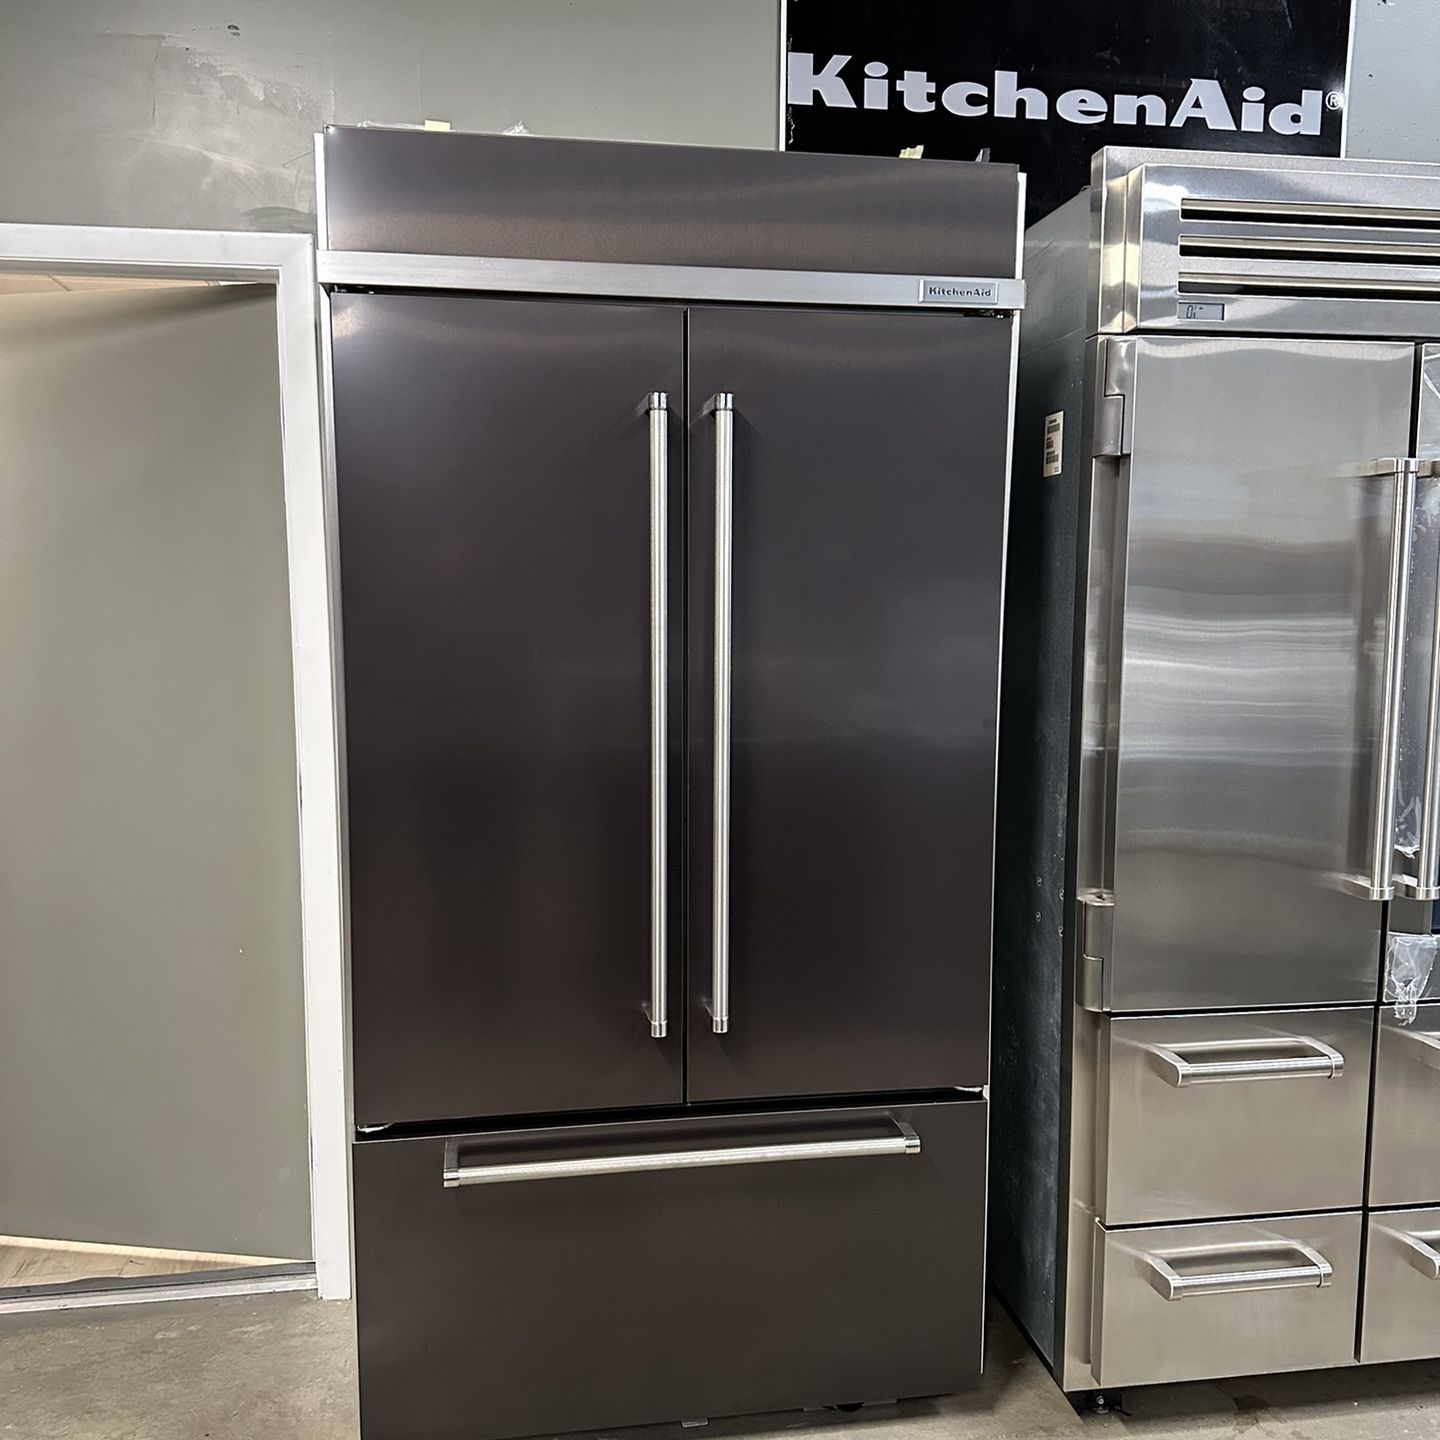 kitchen aid built in refrigerator 42 inch wide 